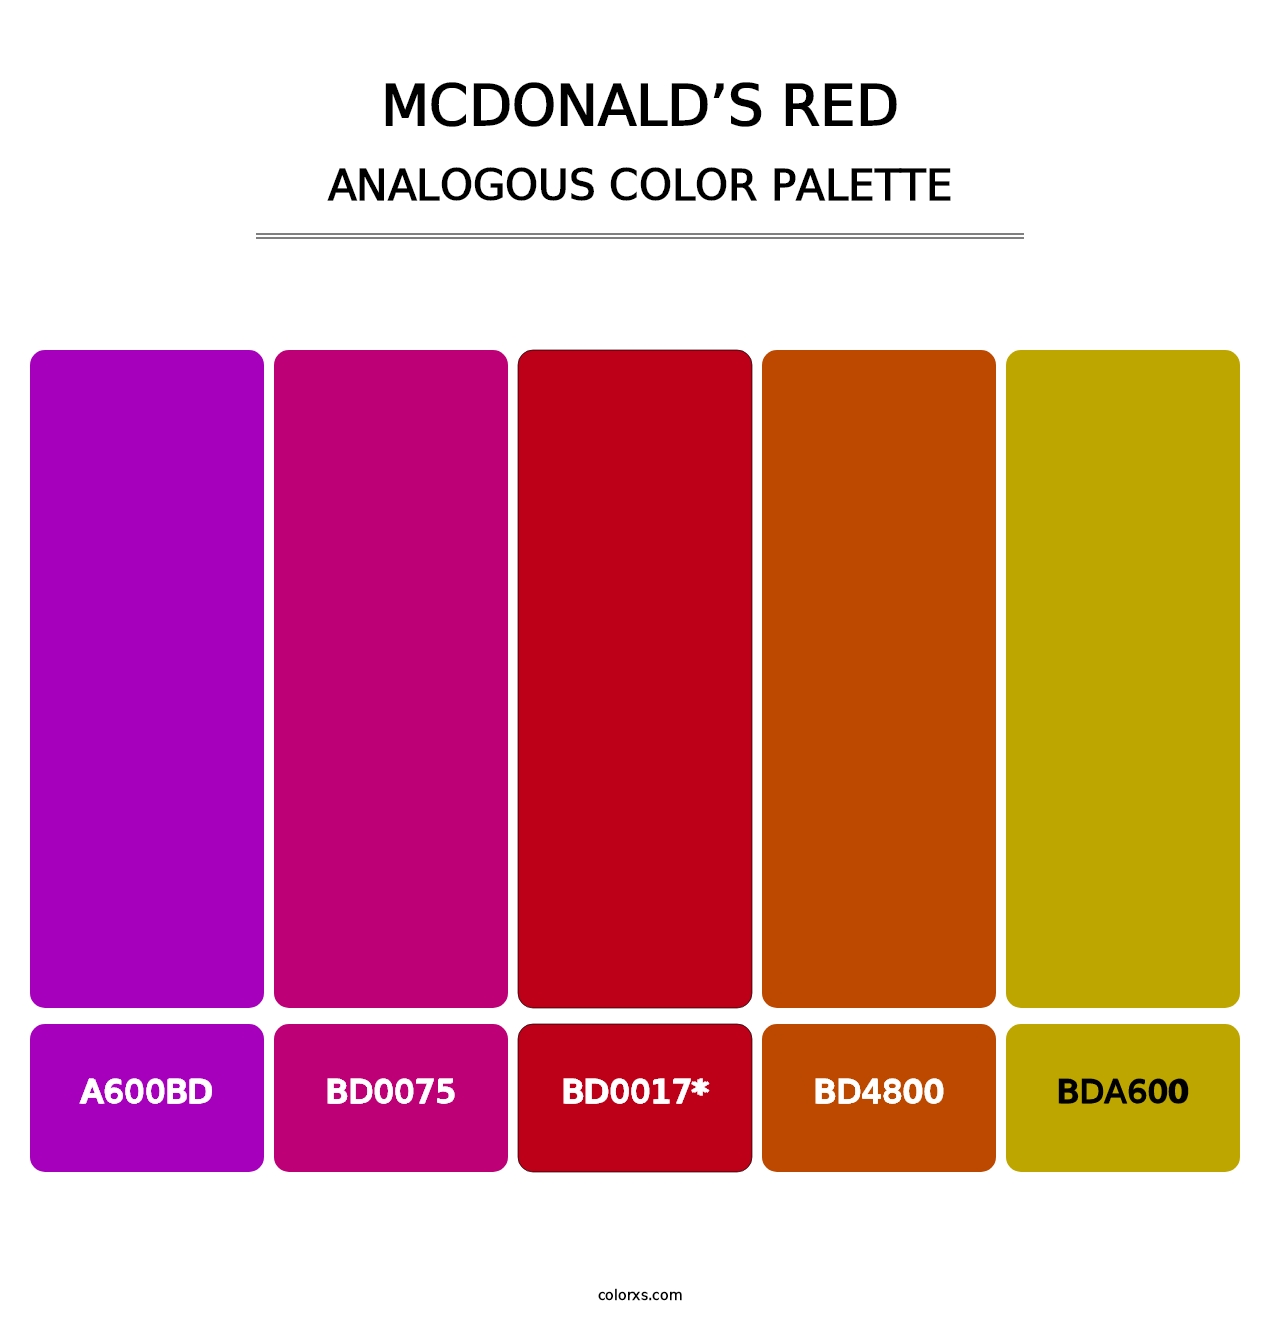 McDonald’s Red - Analogous Color Palette